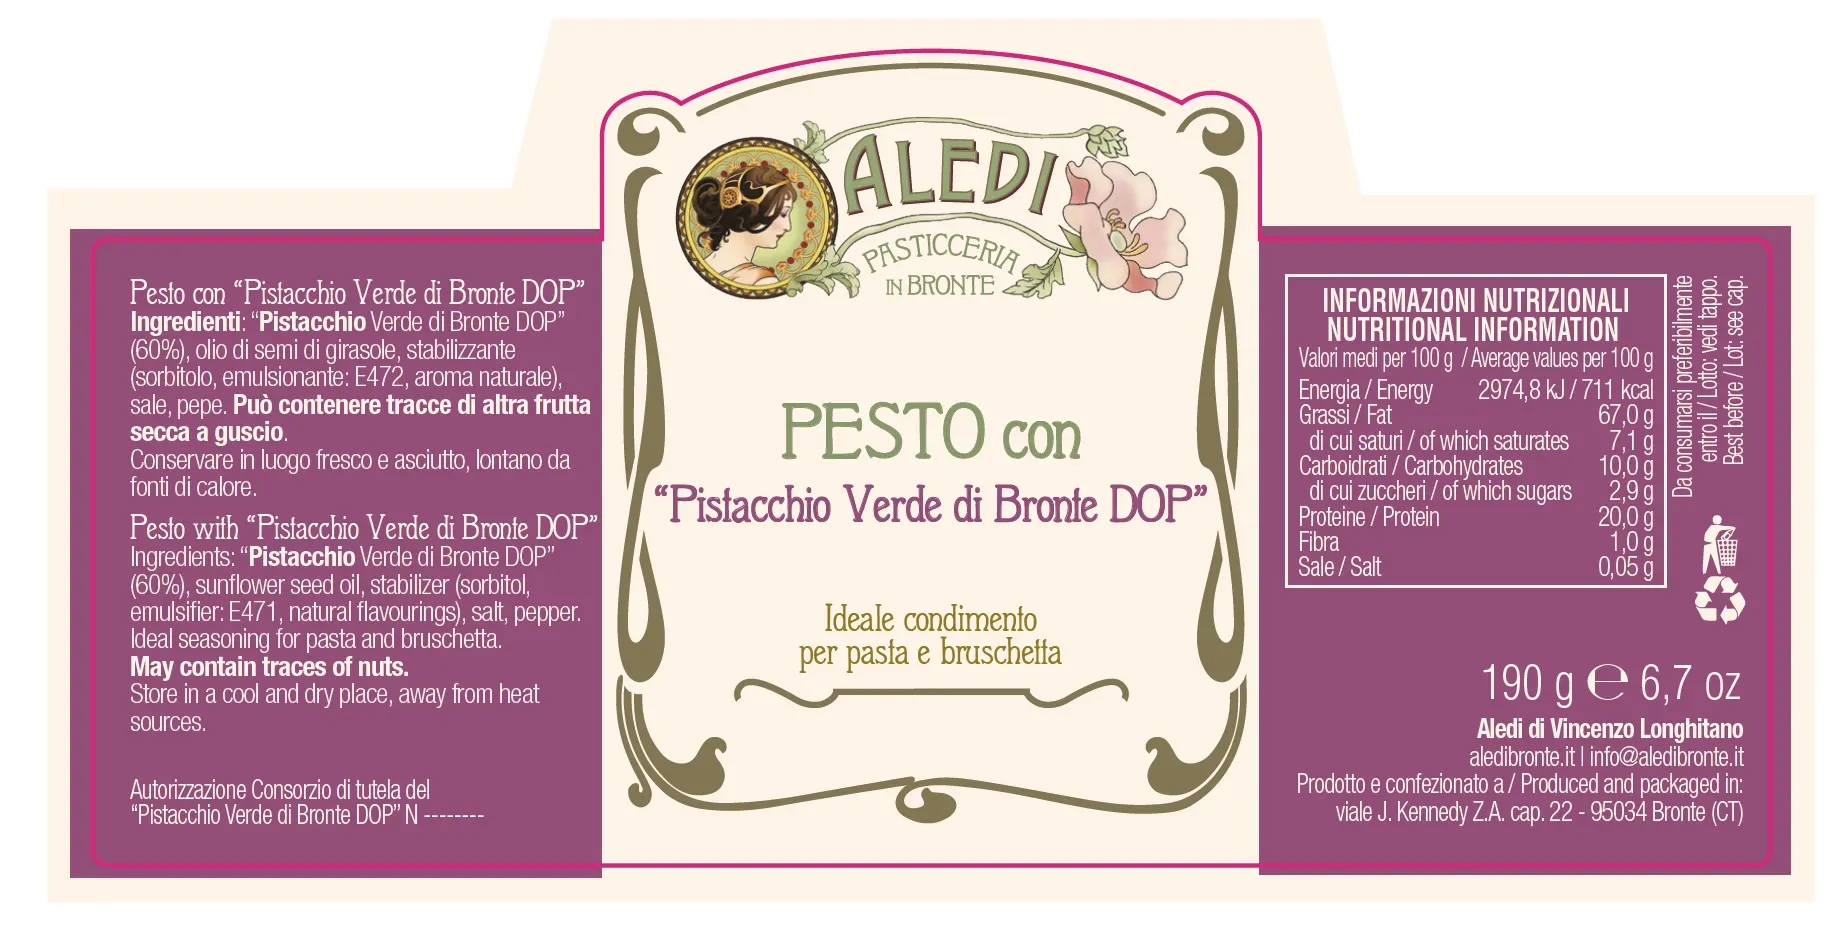 Etichetta-Pesto-Di-Pistacchio-Di-Bronte-Dop